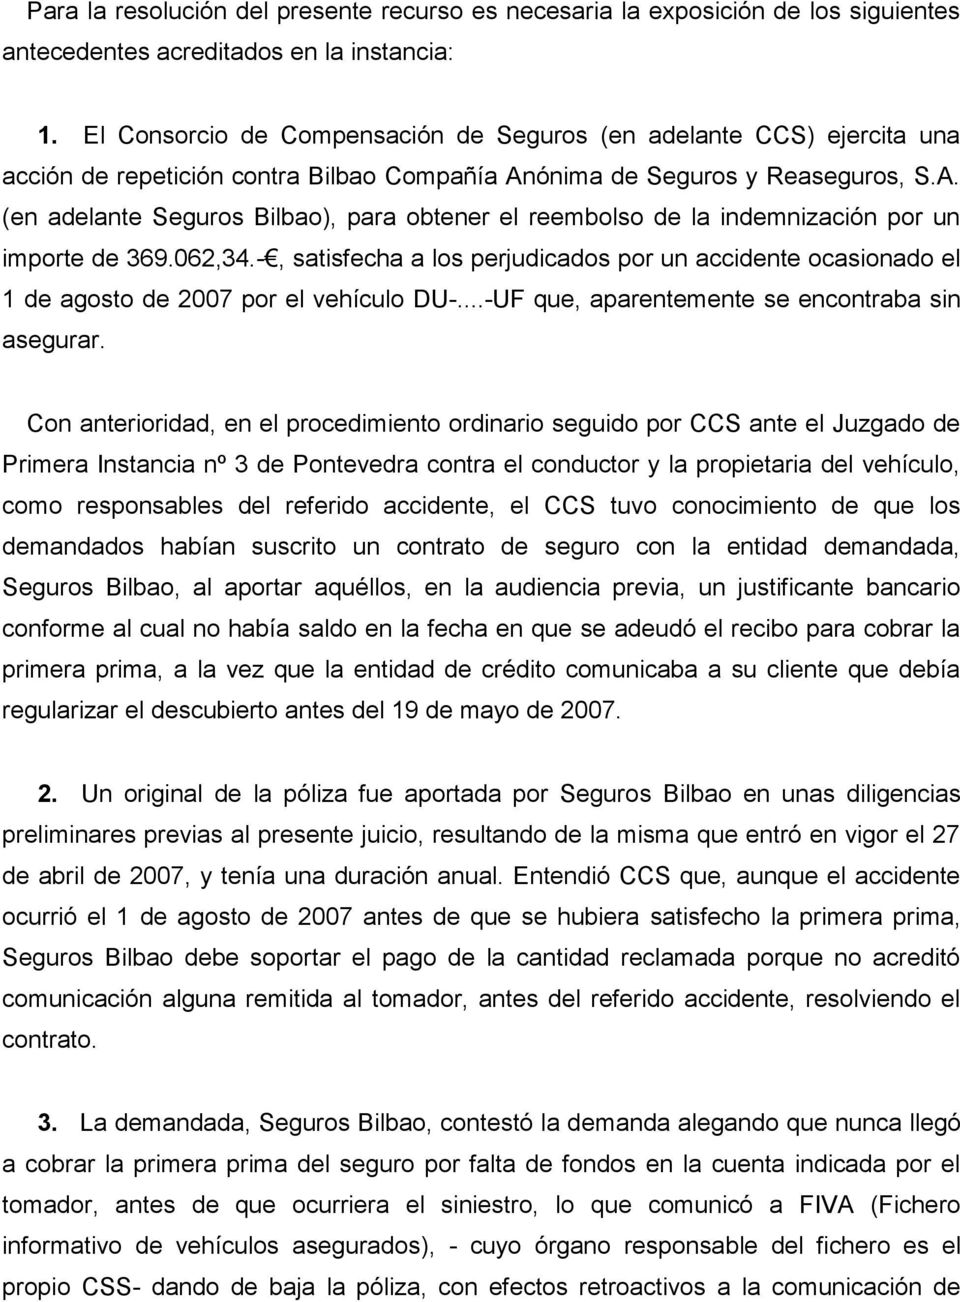 ónima de Seguros y Reaseguros, S.A. (en adelante Seguros Bilbao), para obtener el reembolso de la indemnización por un importe de 369.062,34.